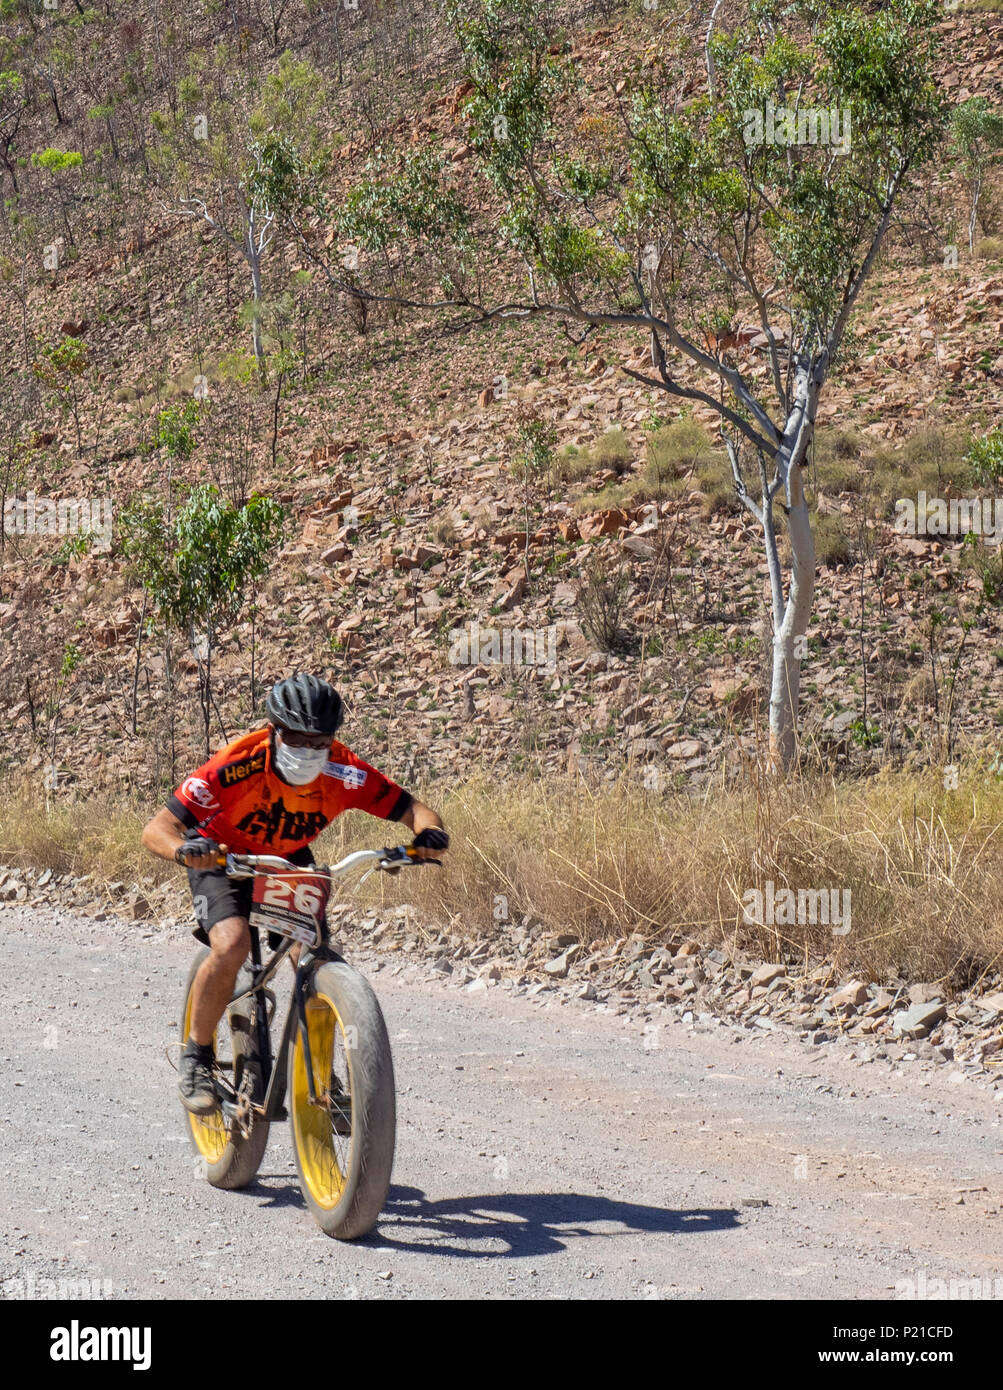 Gibb Challenge 2018 ciclista in sella a una fatbike su una strada sterrata El Questro Station Kimberley Australia Occidentale Foto Stock